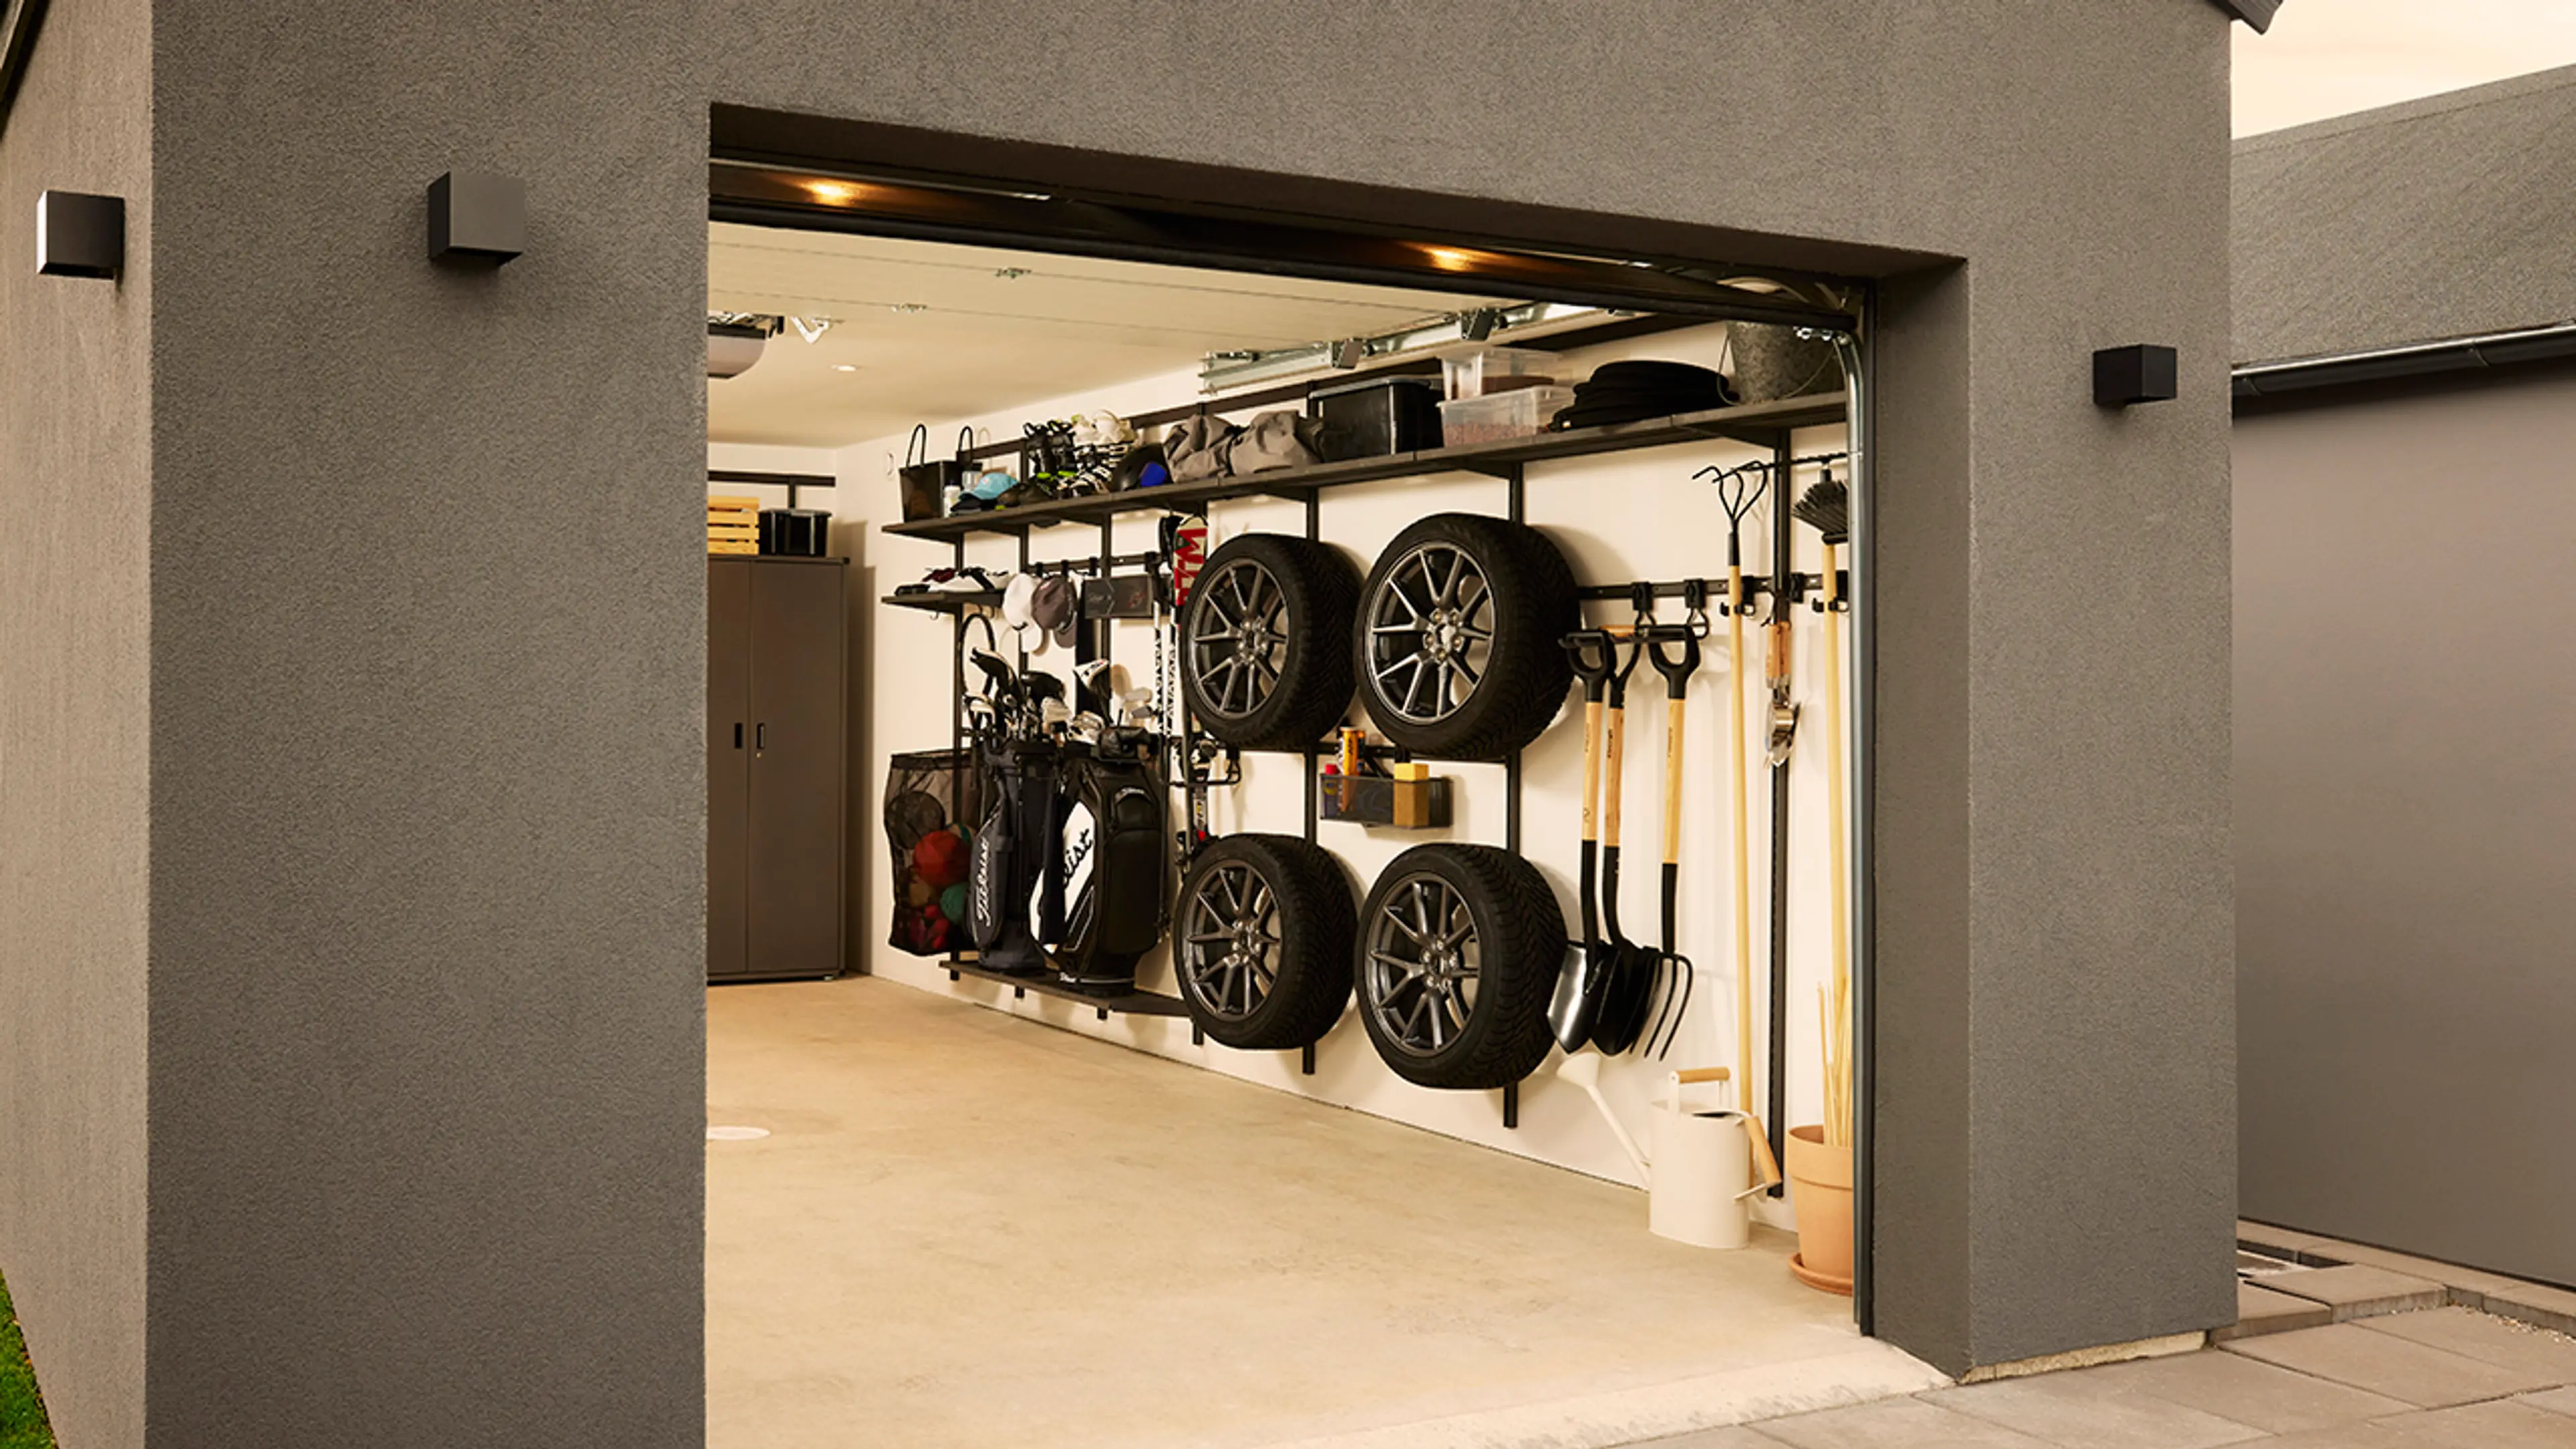 Garasje med garasjeinnredning for oppbevaring av bildekk og annet utstyr.